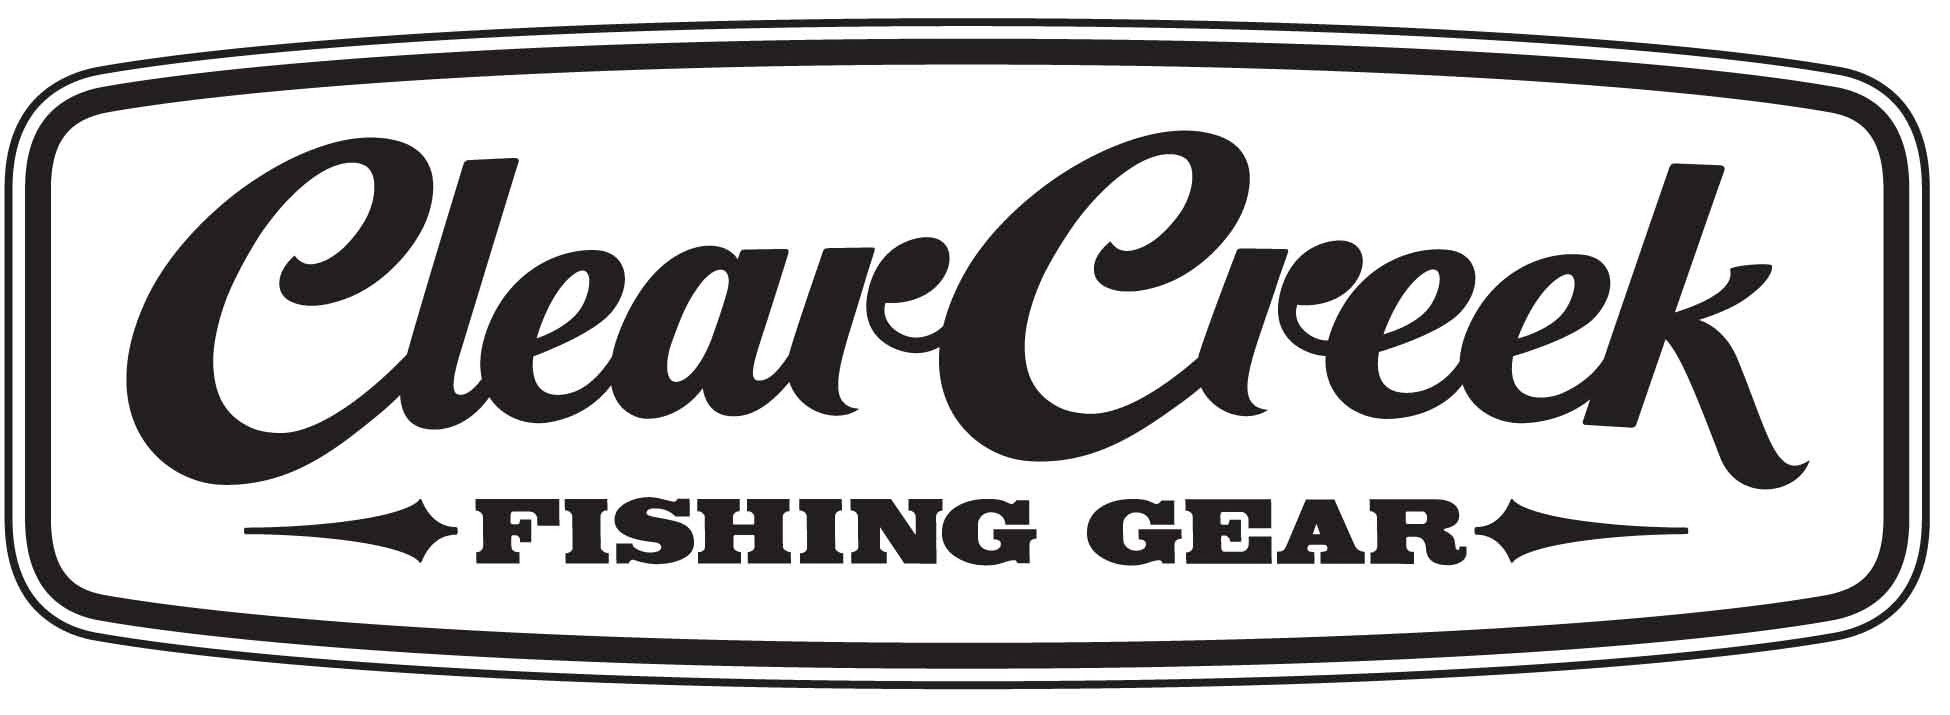  CLEAR CREEK FISHING GEAR